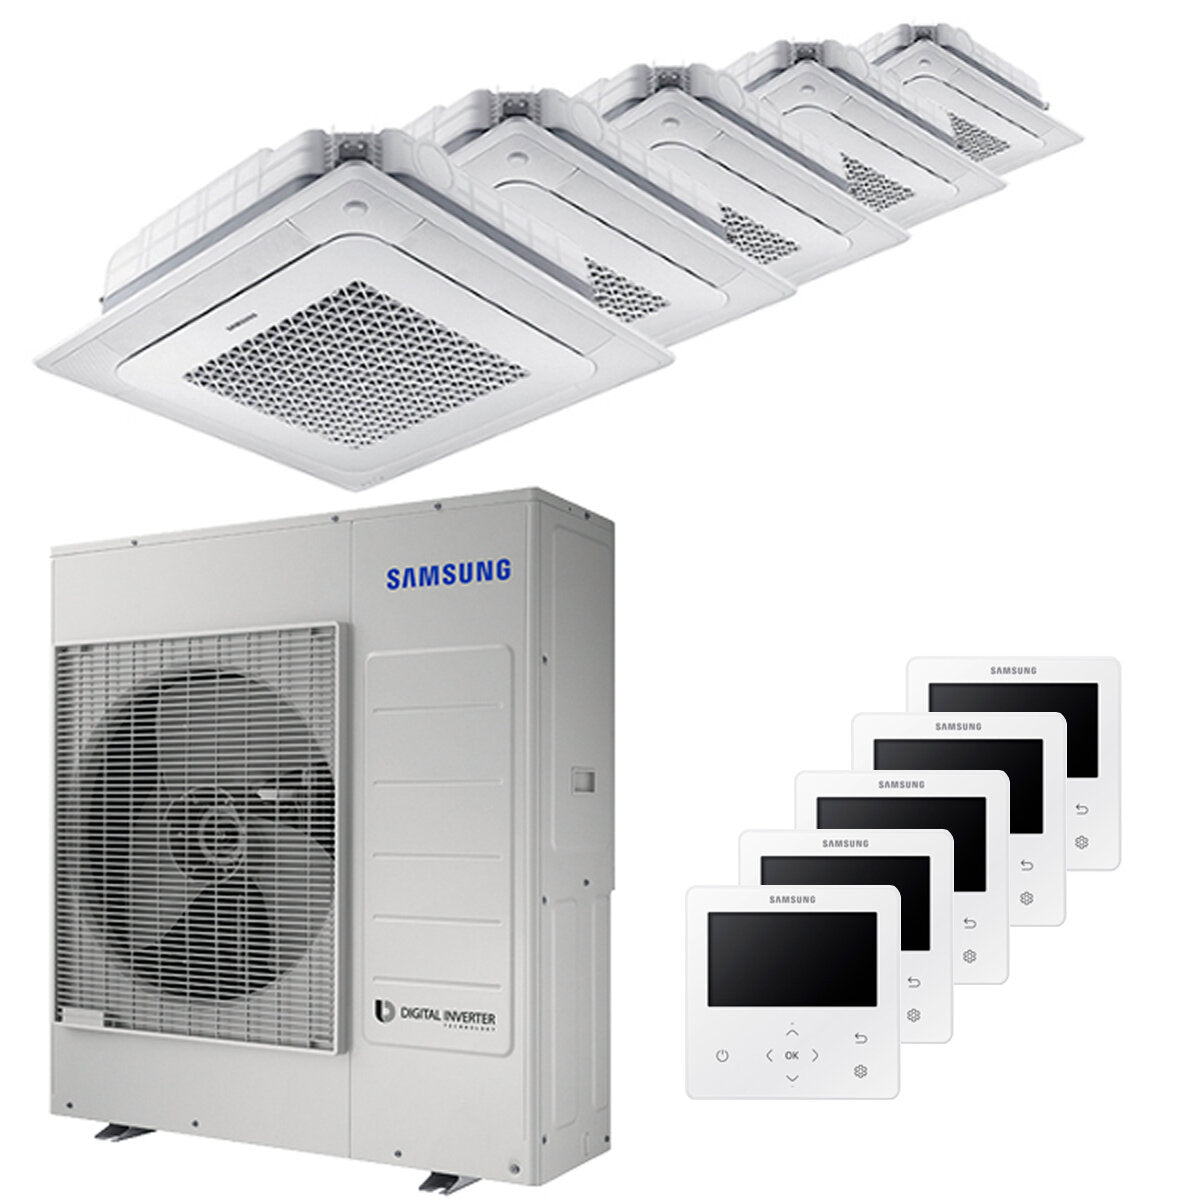 Samsung air conditioner Windfree 4-way penta split 7000 + 12000 + 12000 + 12000 + 12000 BTU inverter A ++ outdoor unit 10.0 kW